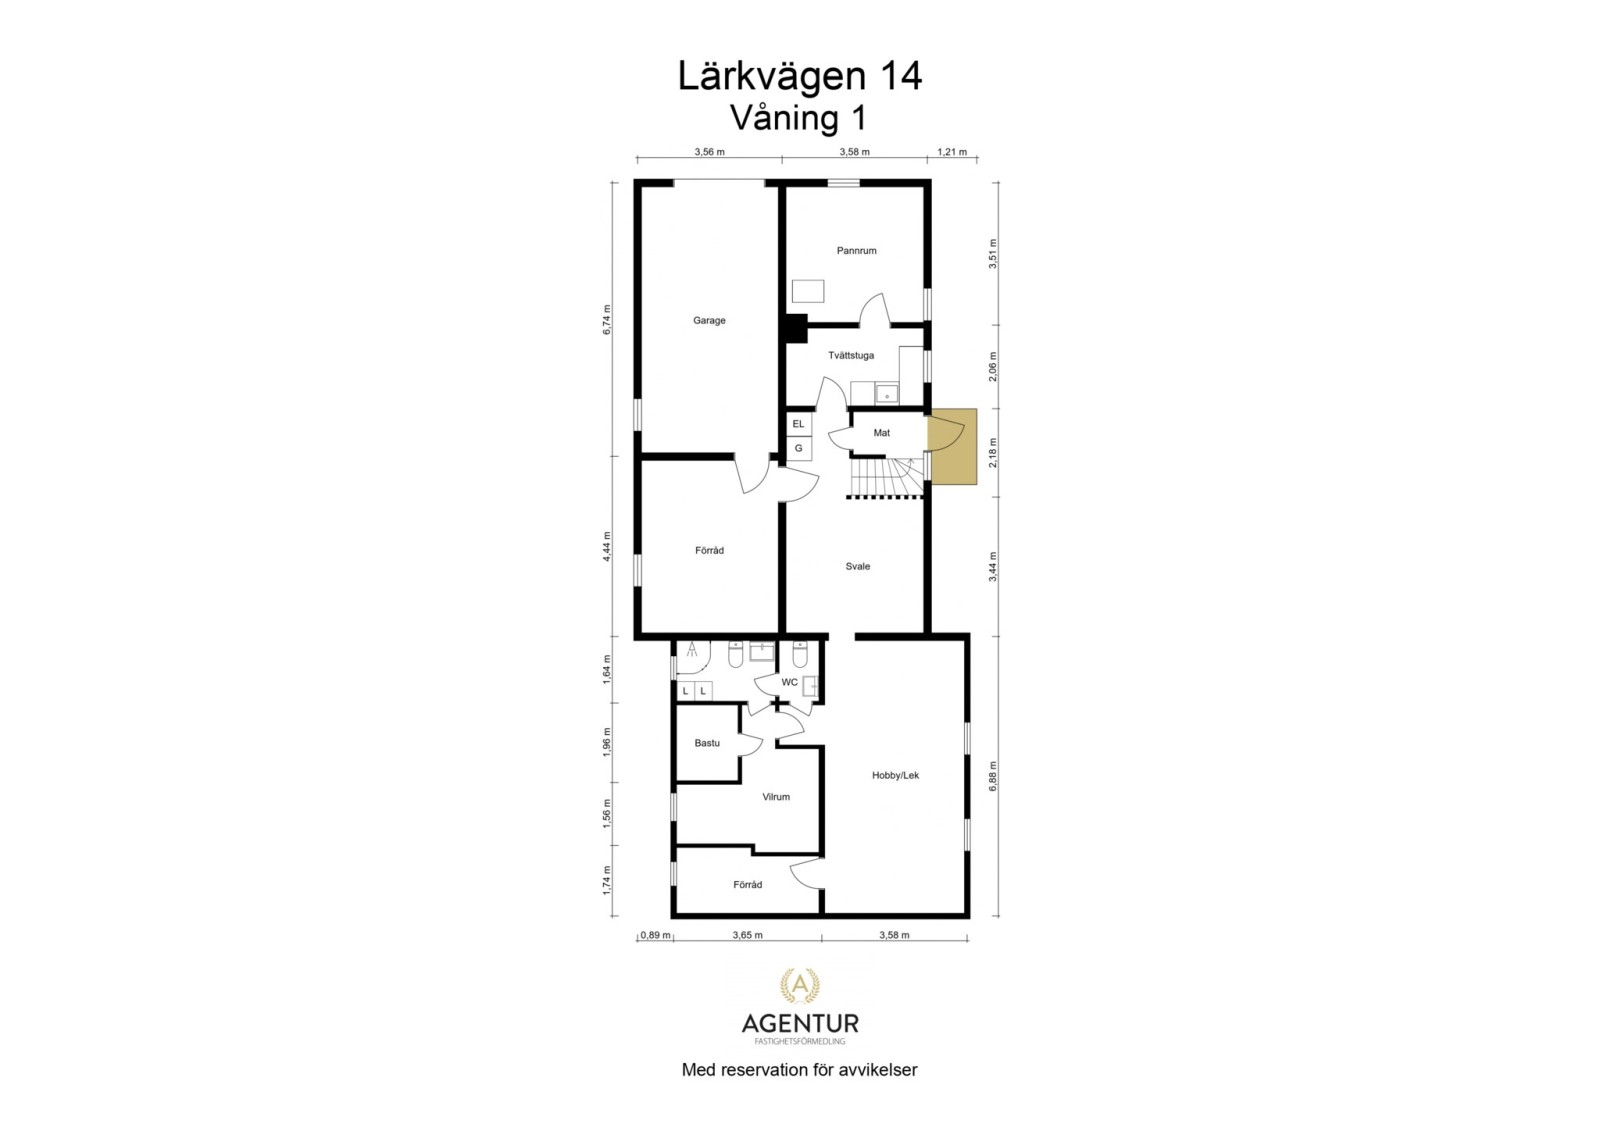 2D Floor Plan - Våning 1 - Letterhead Lärkvägen 14